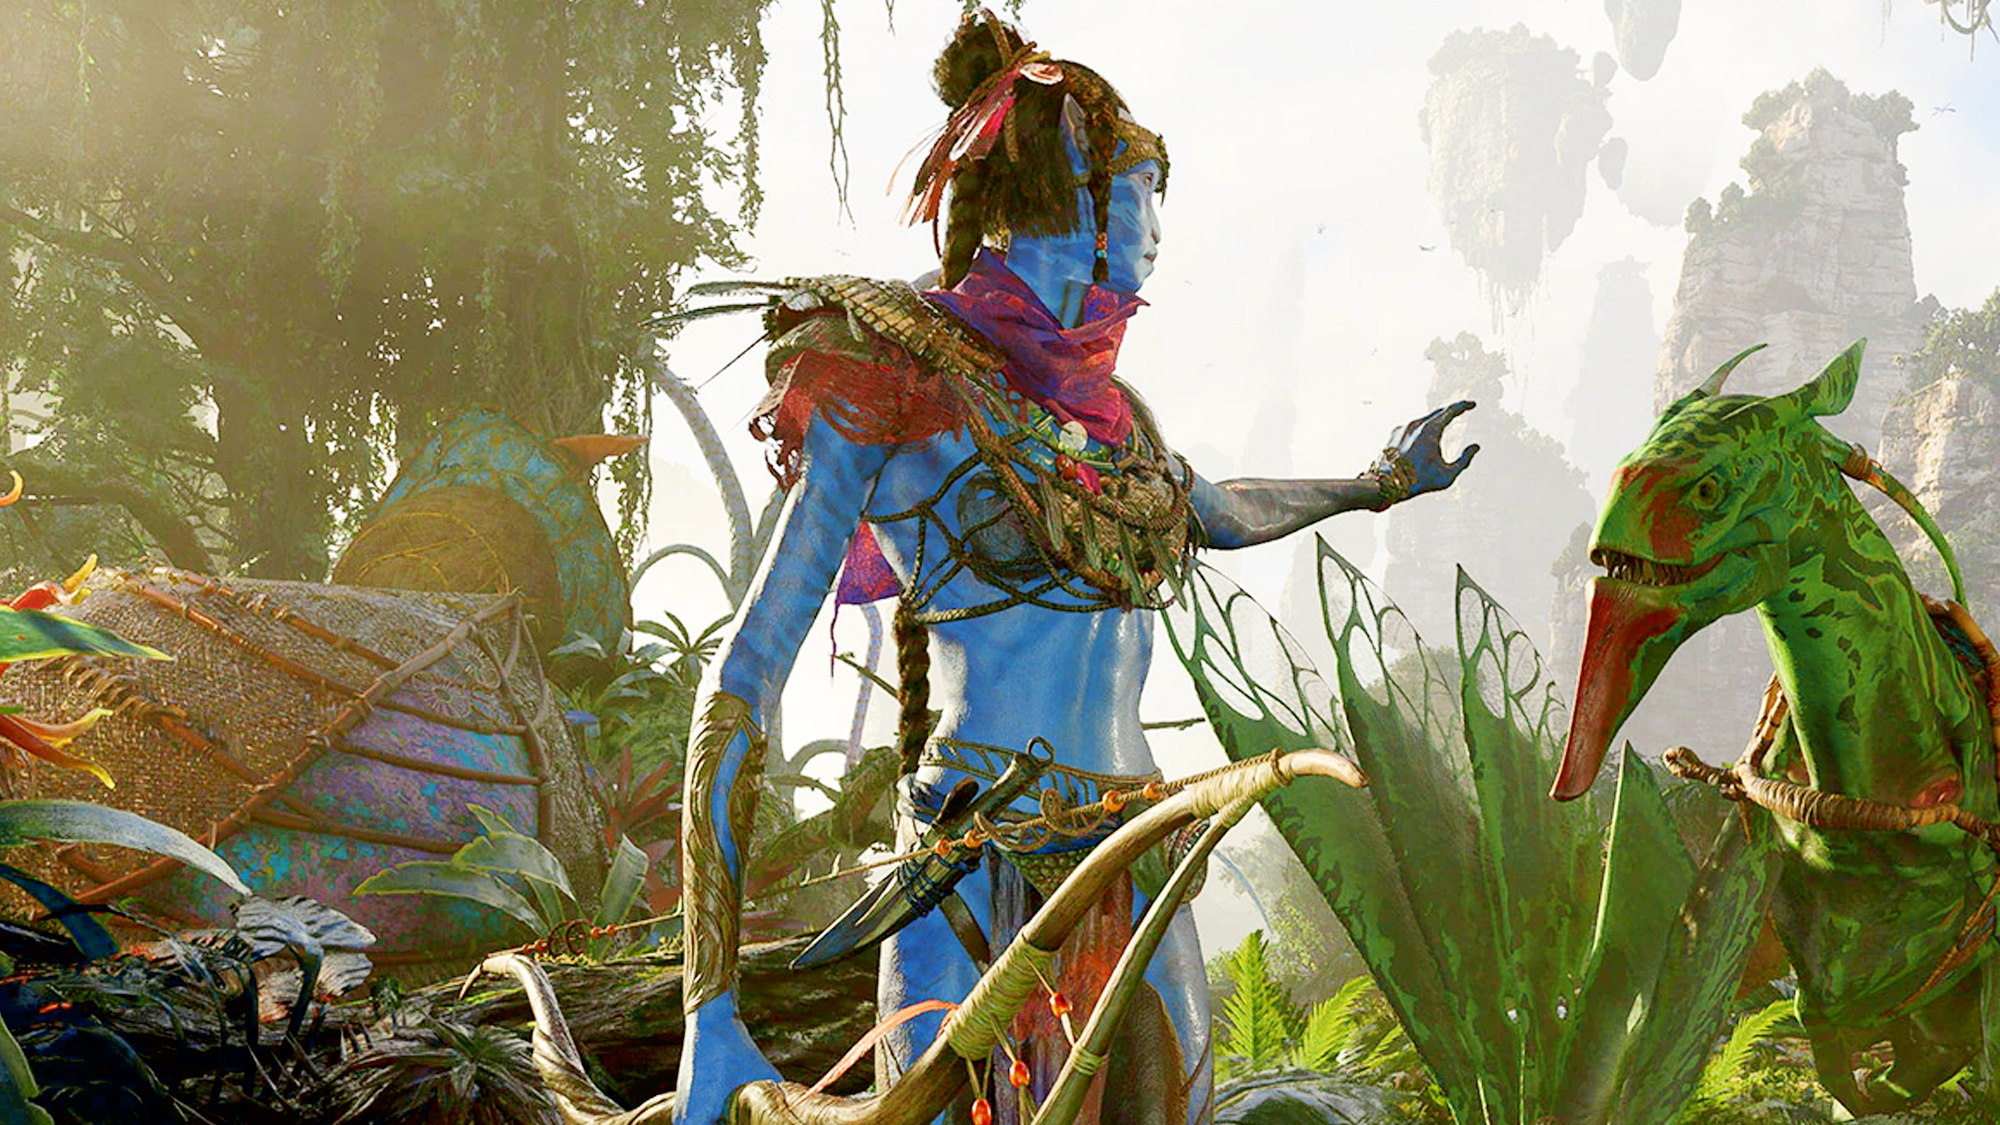 Avatar Frontiers of Pandora victime d'un leak. Bientôt une grosse annonce ?